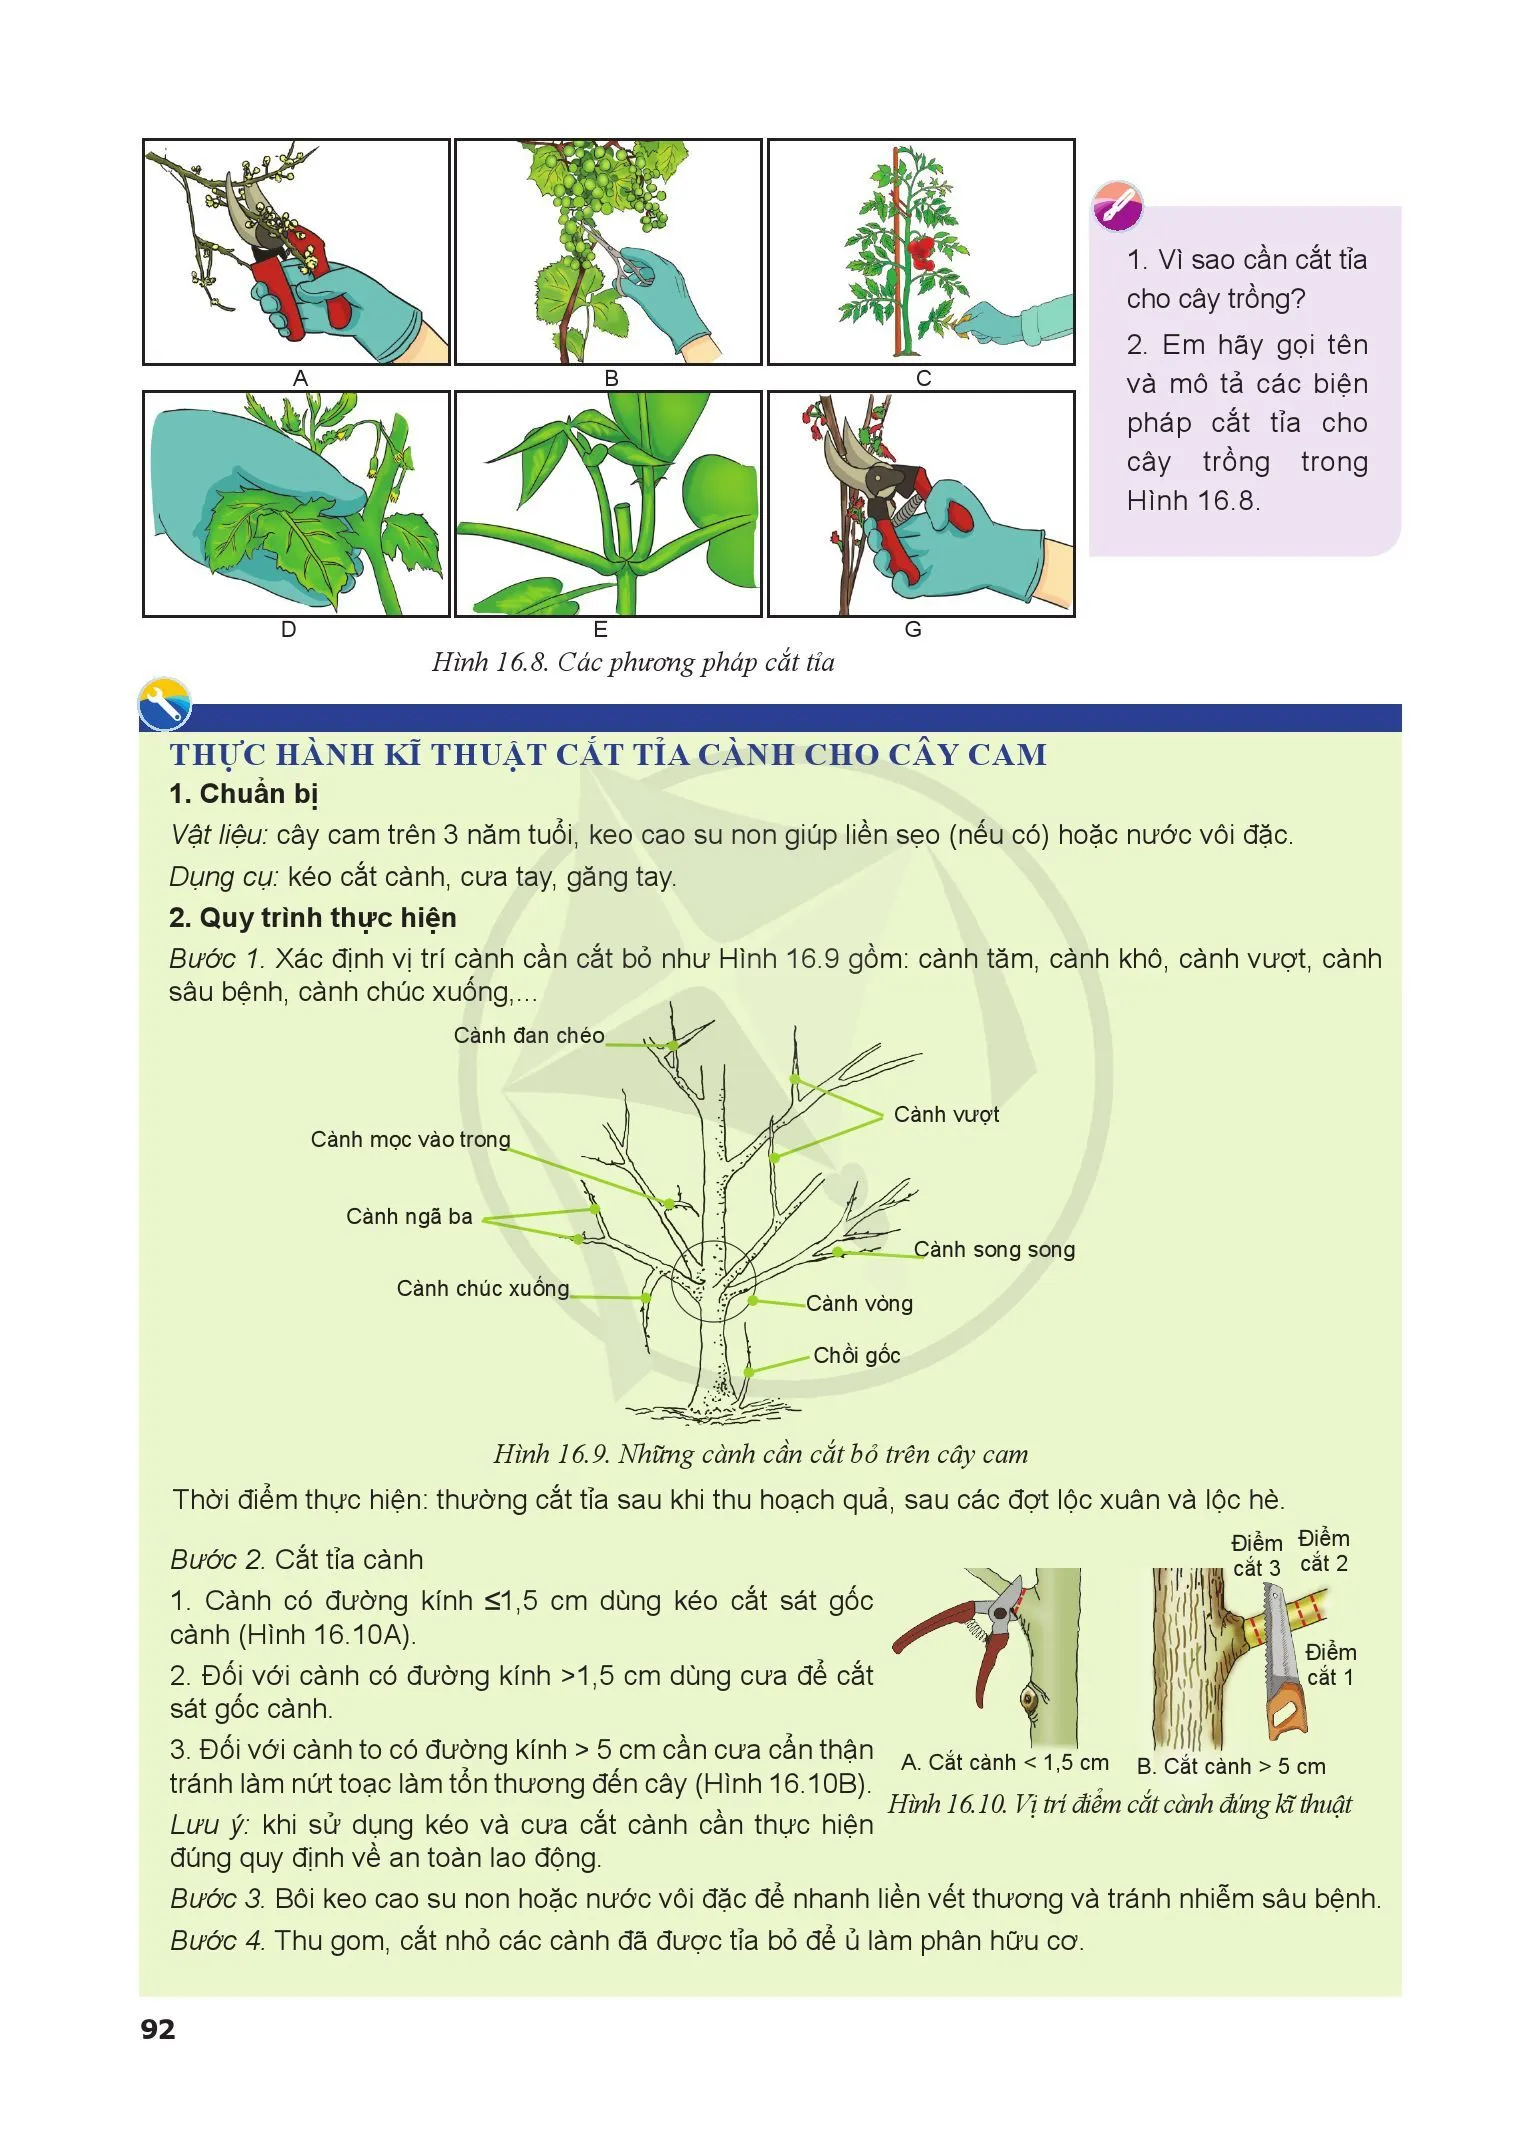 Bài 16. Quy trình trồng trọt